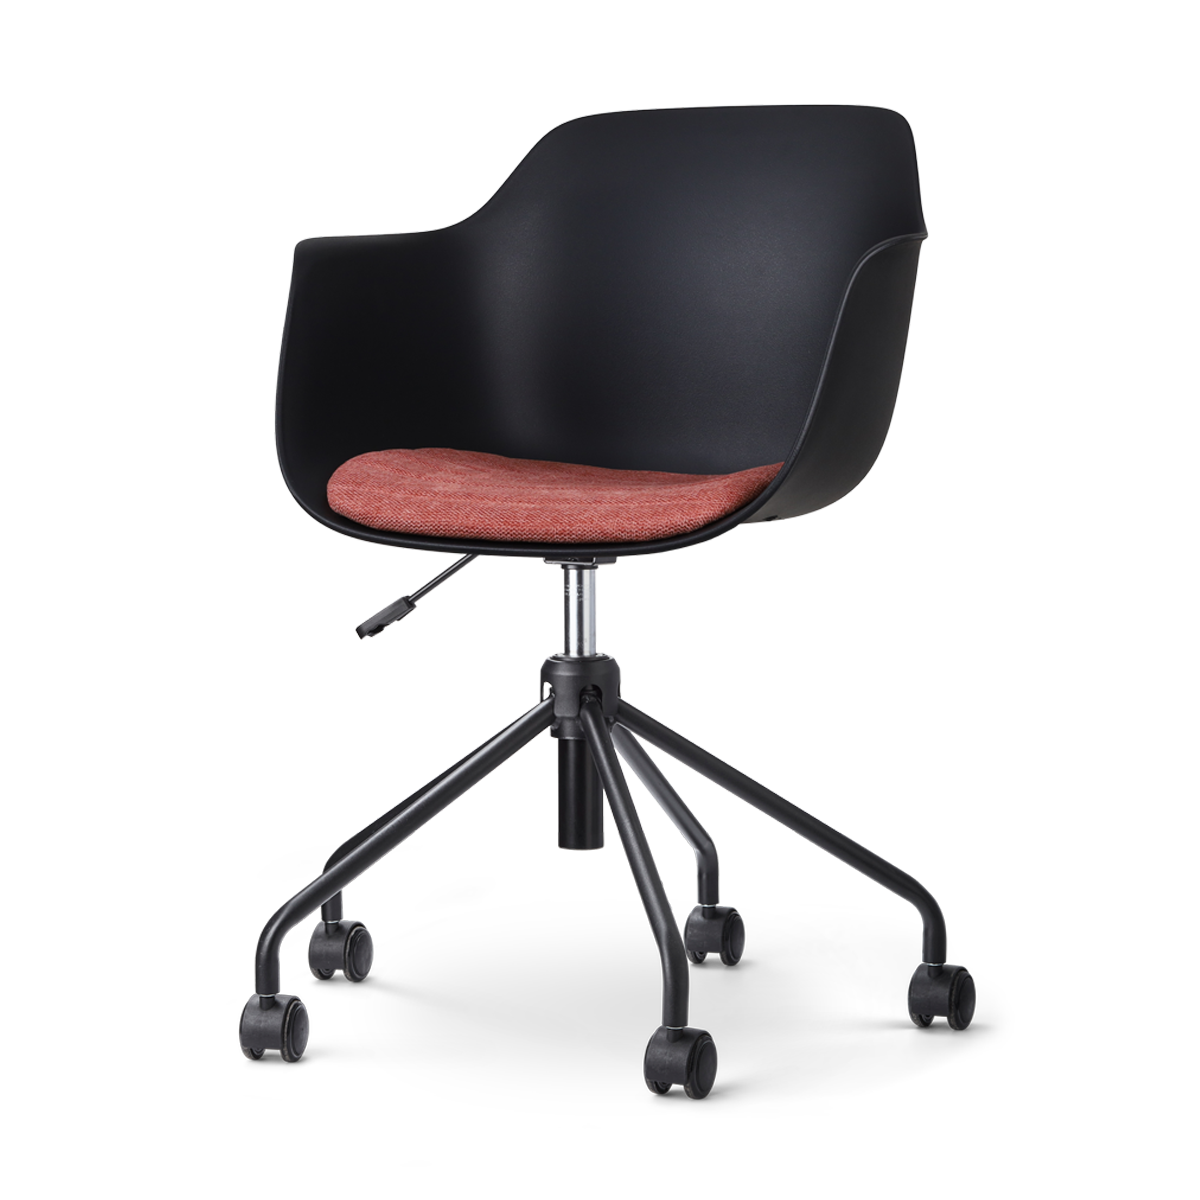 Nout-Liz bureaustoel zwart met terracotta rood zitkussen - zwart onderstel